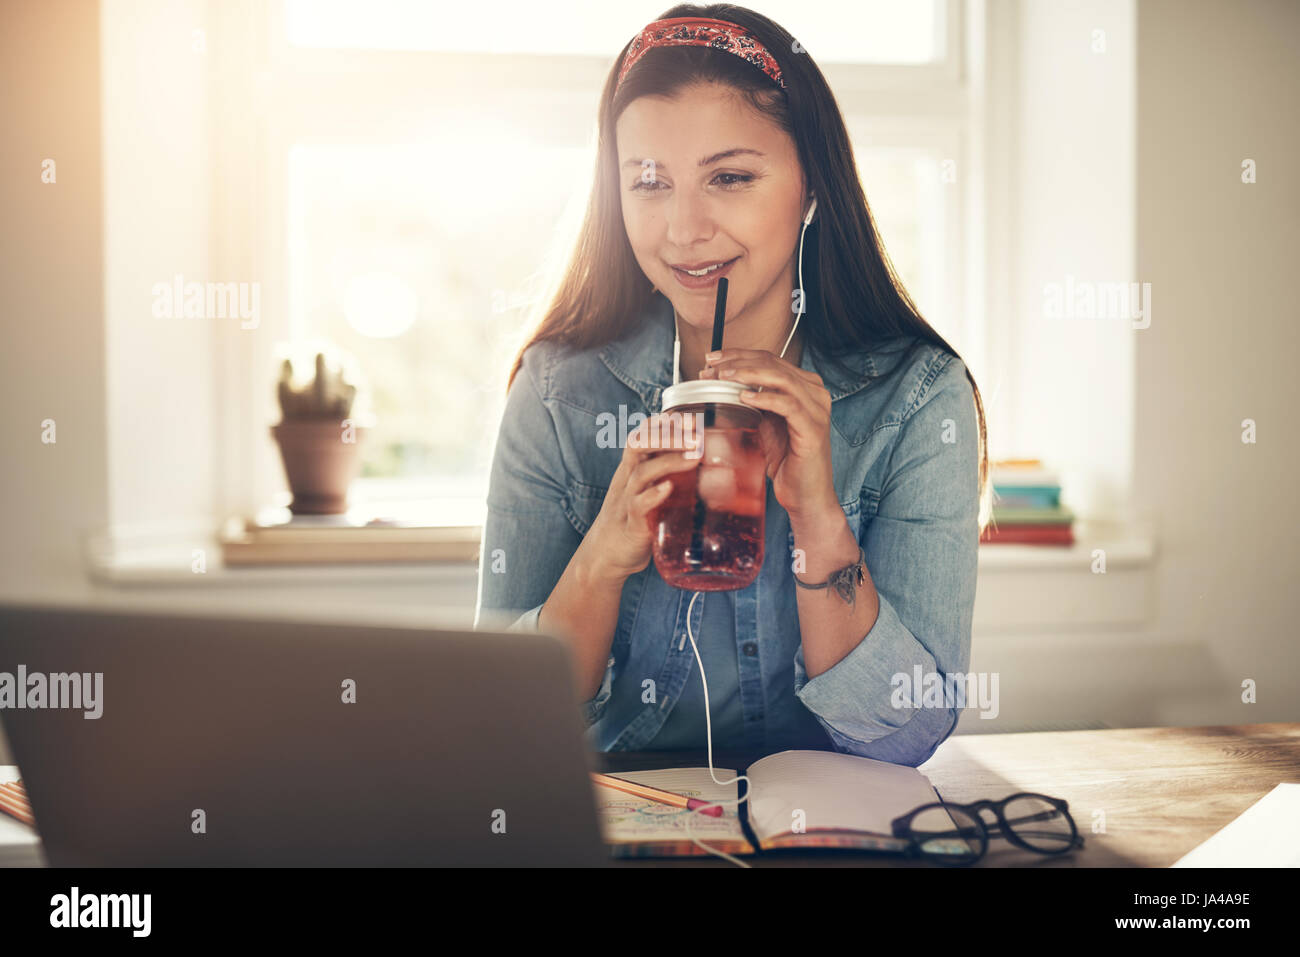 Young smiling businesswoman sitting avec boisson savoureuse et looking at laptop dans les écouteurs. Banque D'Images